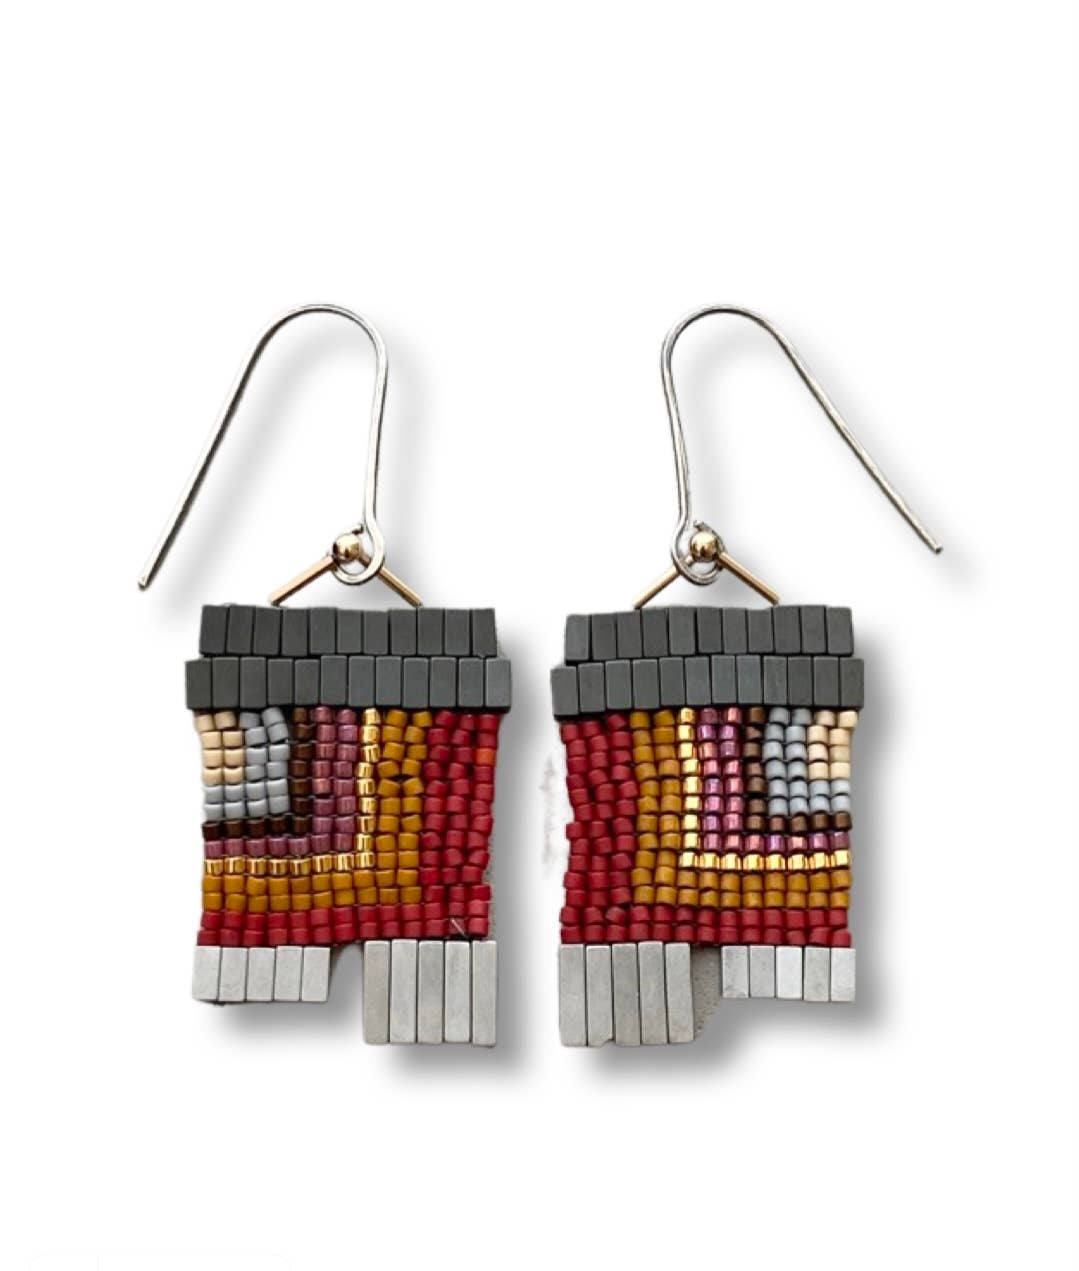 City Block glass earrings